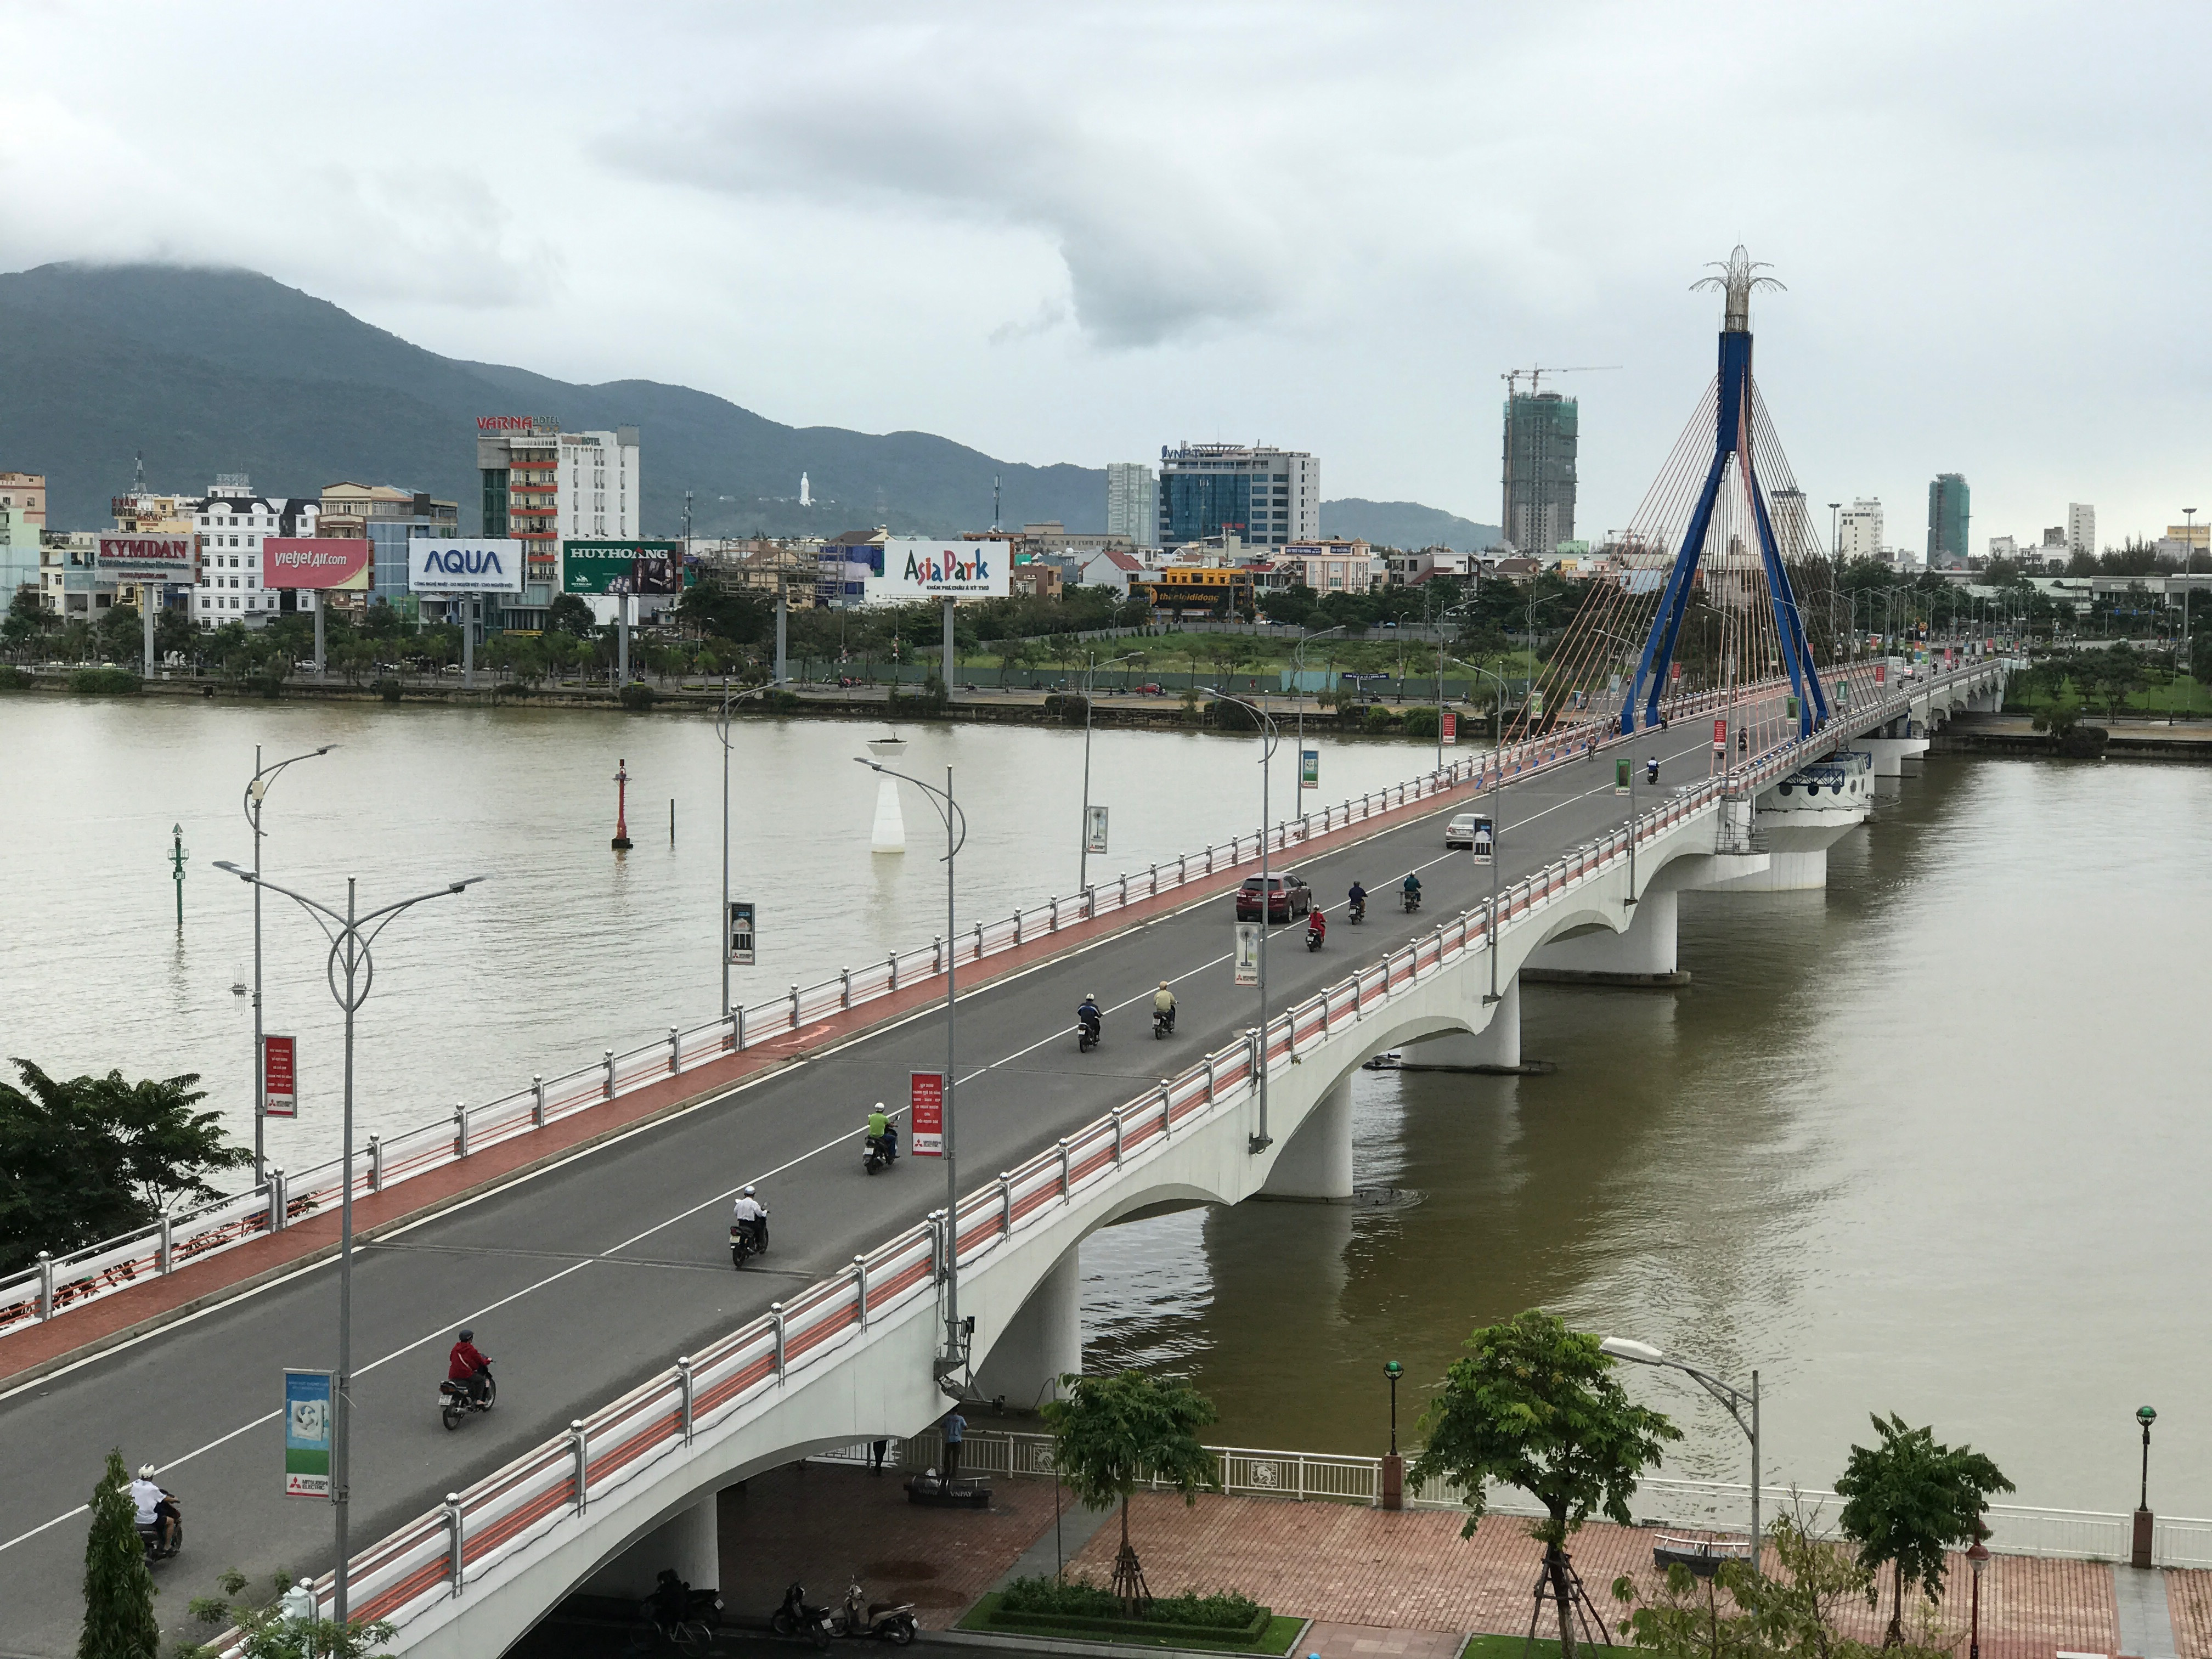 
Ngay sau khi thi công xong phần hầm kín sẽ thực hiện điều chỉnh lại phân luồng giao thông, theo đó sẽ mở hướng giao thông từ đường Lê Duẩn qua cầu Sông Hàn.
